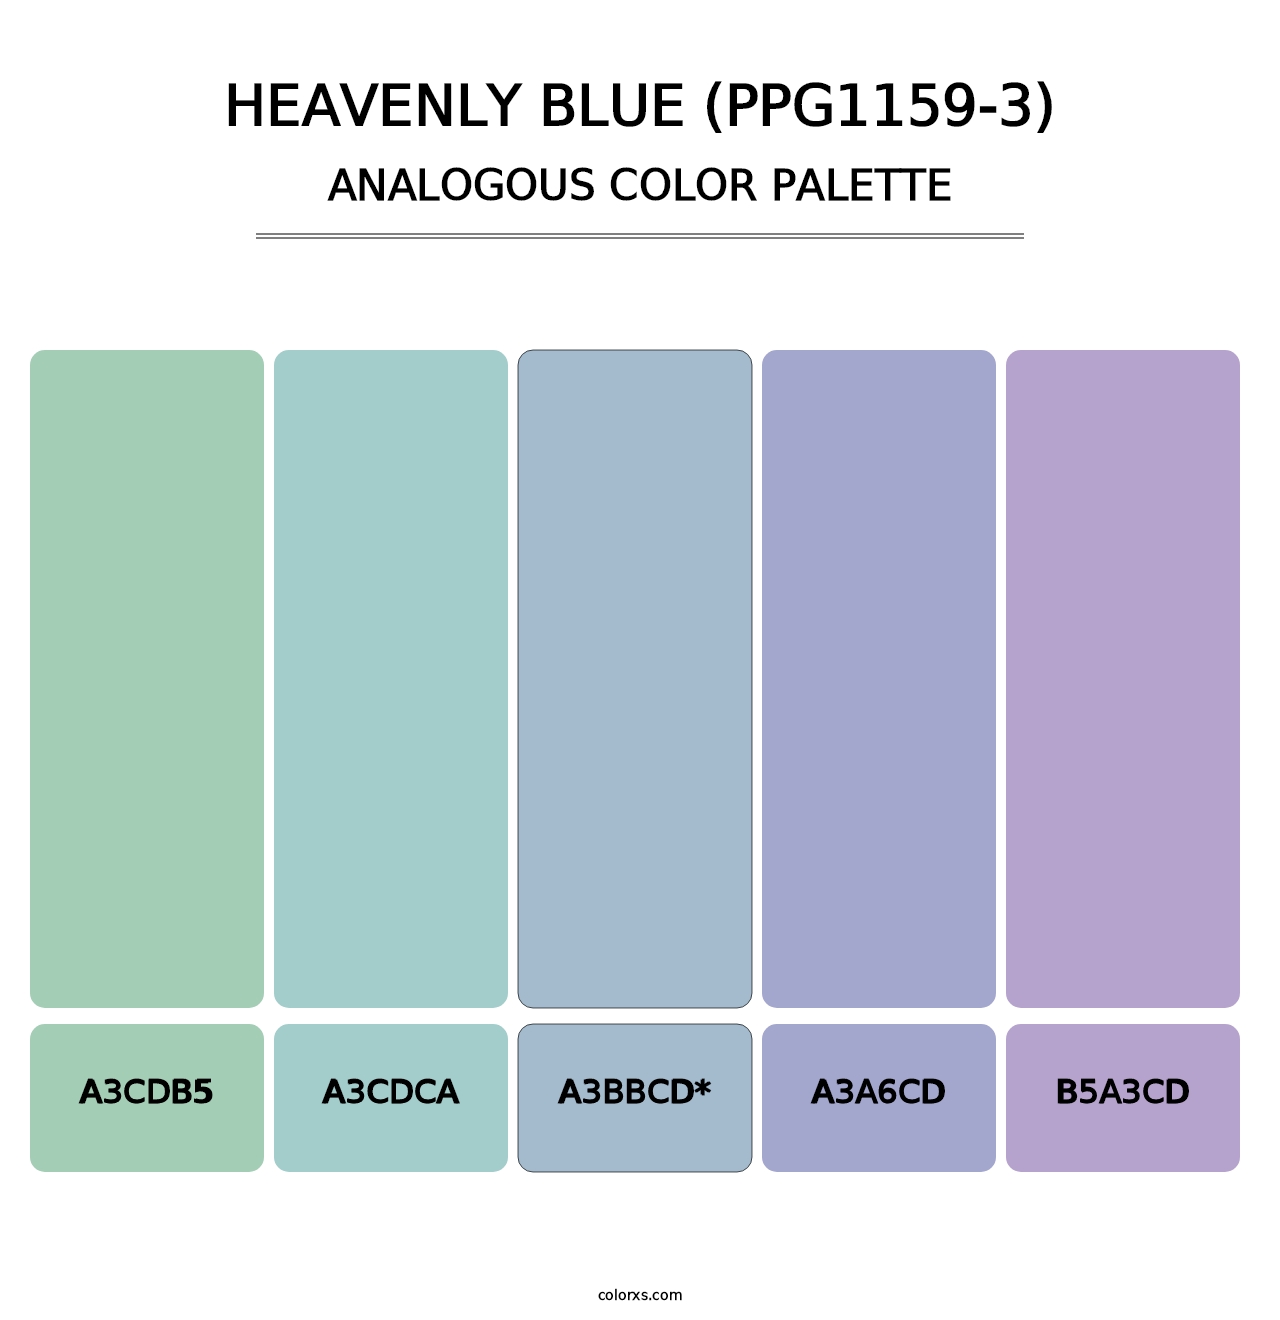 Heavenly Blue (PPG1159-3) - Analogous Color Palette